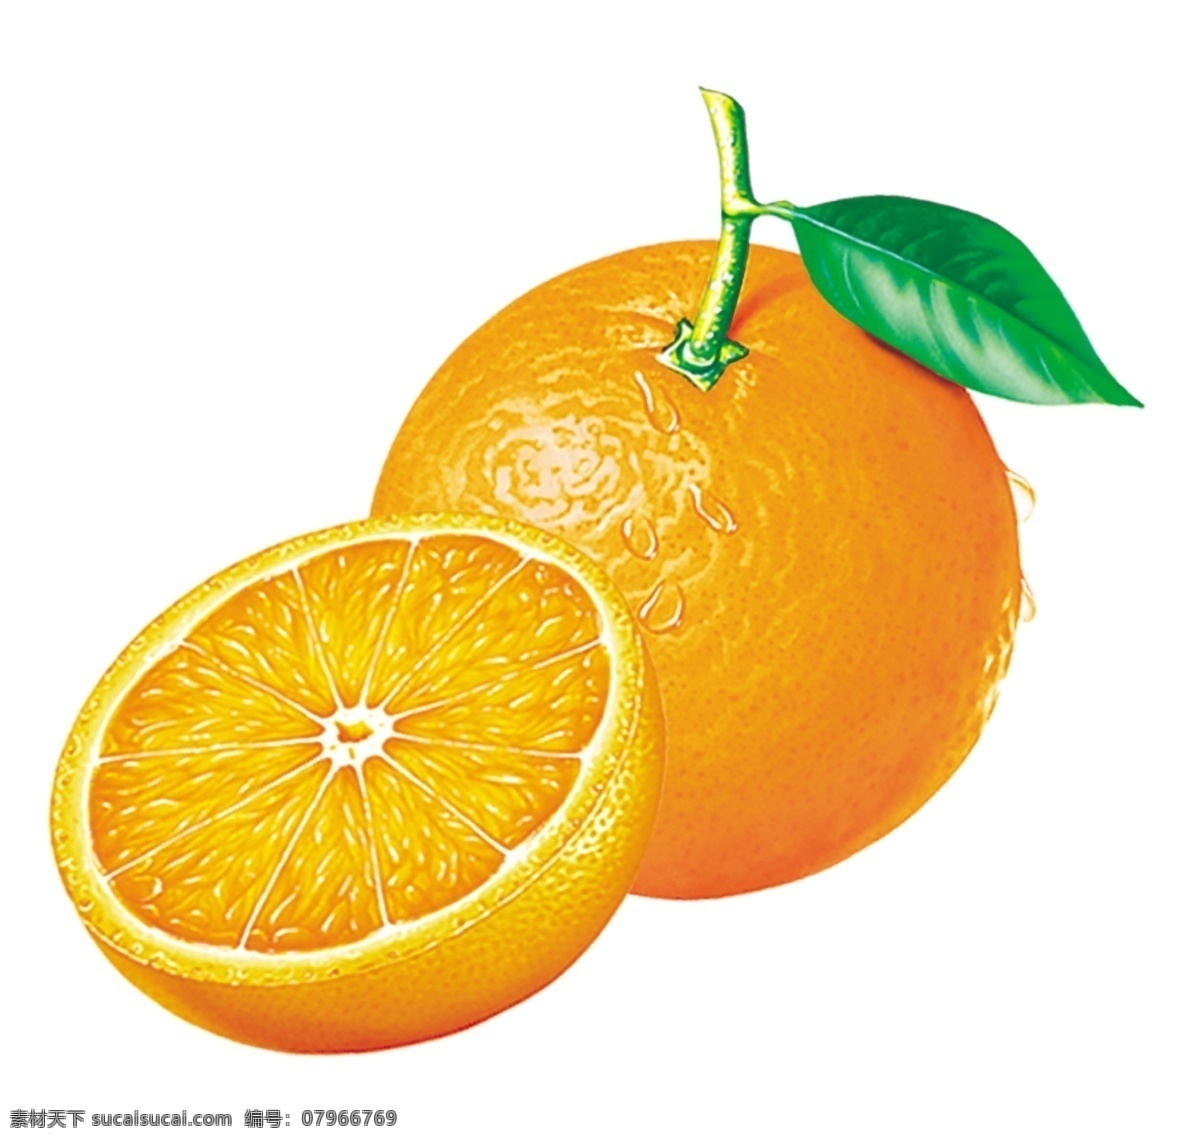 橘子 橘 桔 实物 水果 食物 橘桔橙 分层